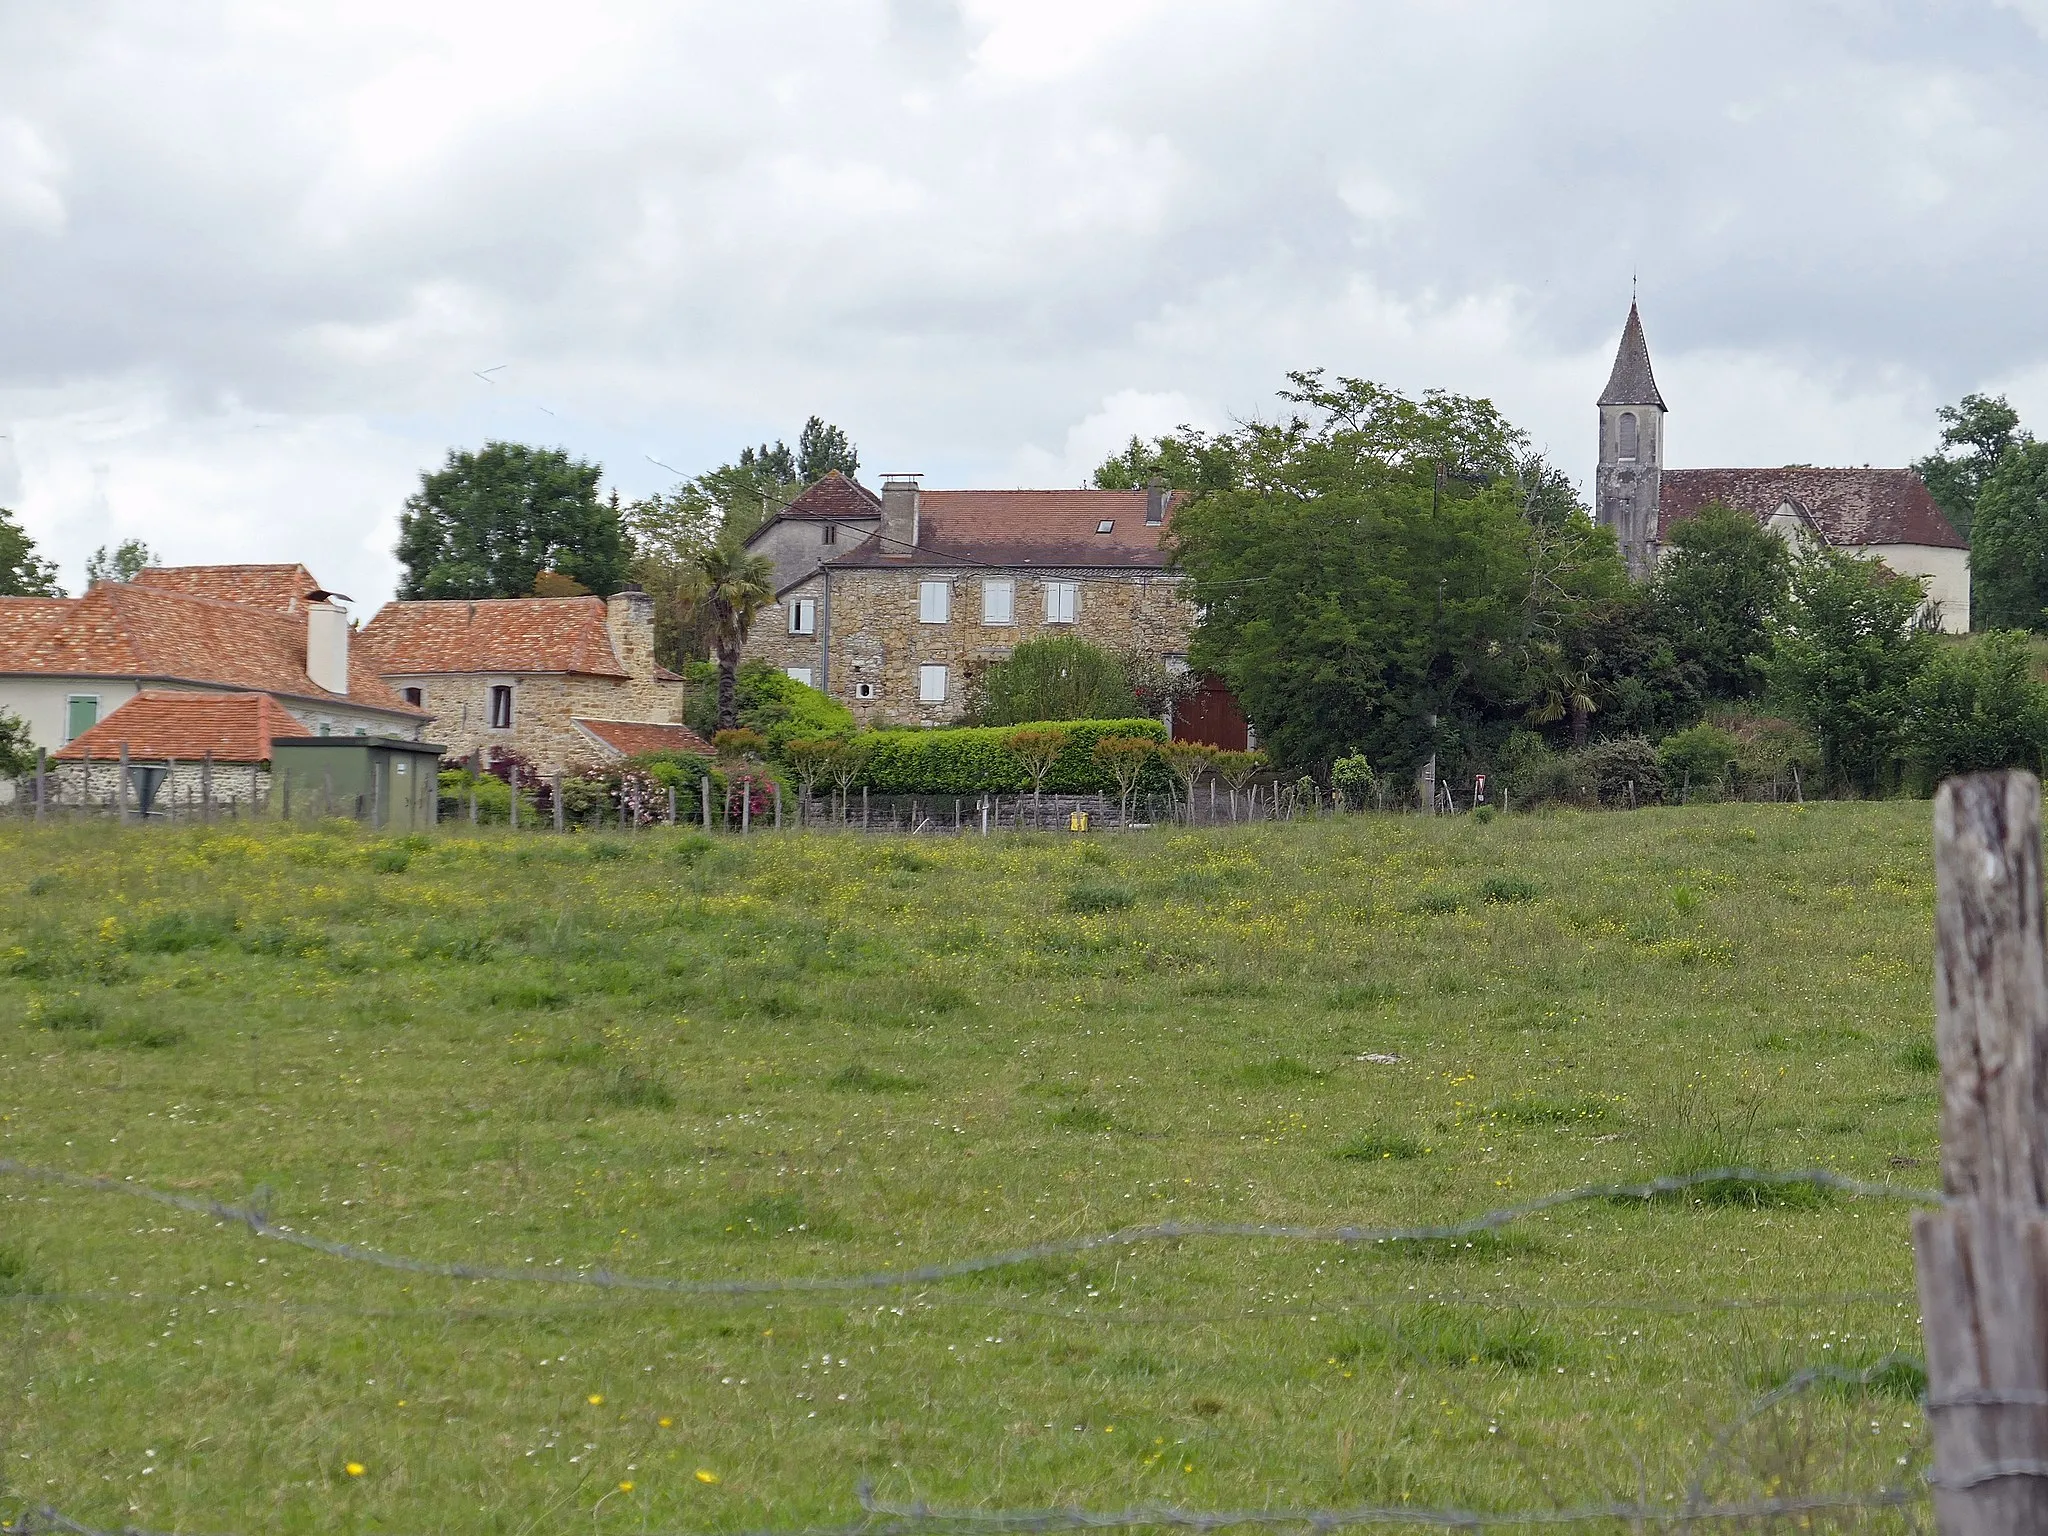 Photo showing: vue des champs sur des maisons couvertes en tuiles, église avec clocher flèche